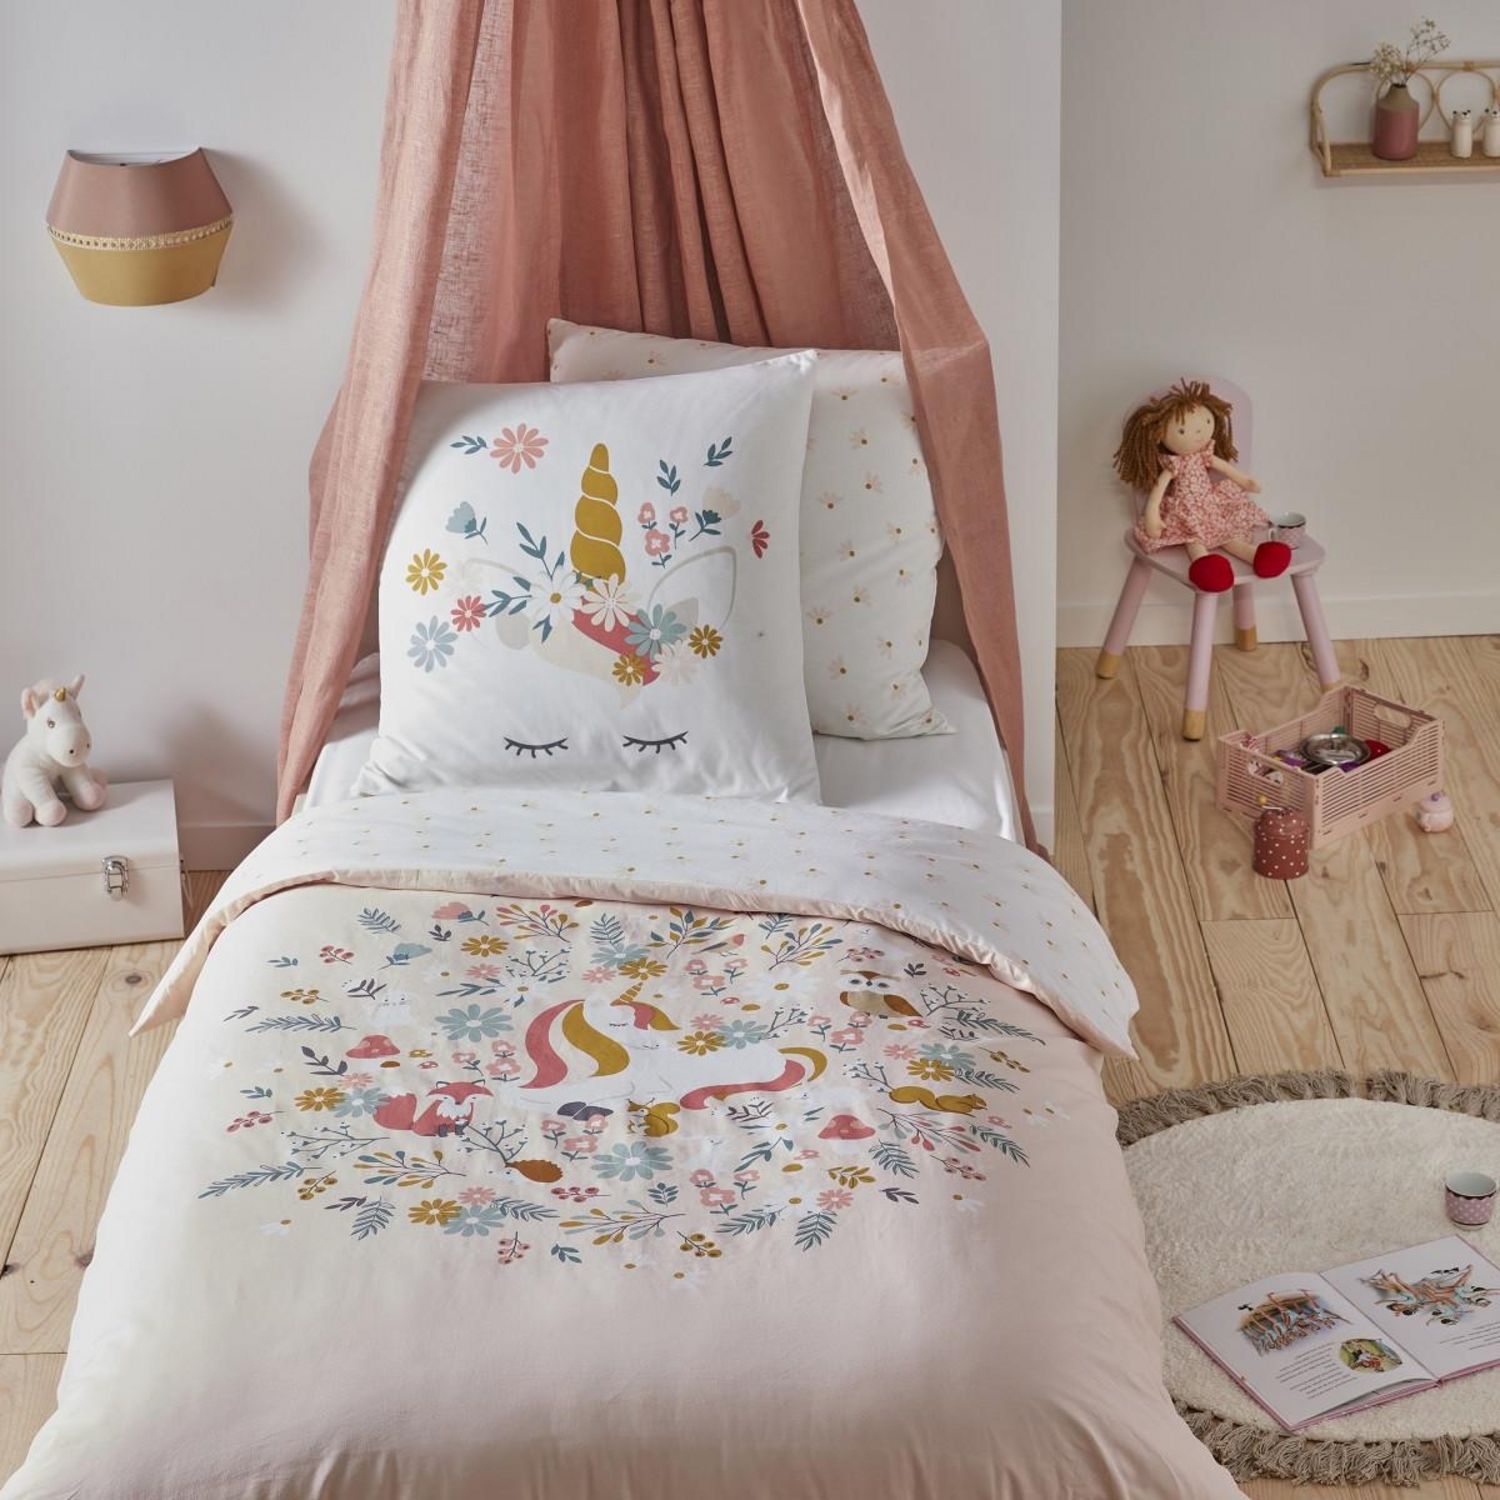 Parure de lit enfant design Pina Pinki - 100% Coton - 140 x 200 cm - Rose